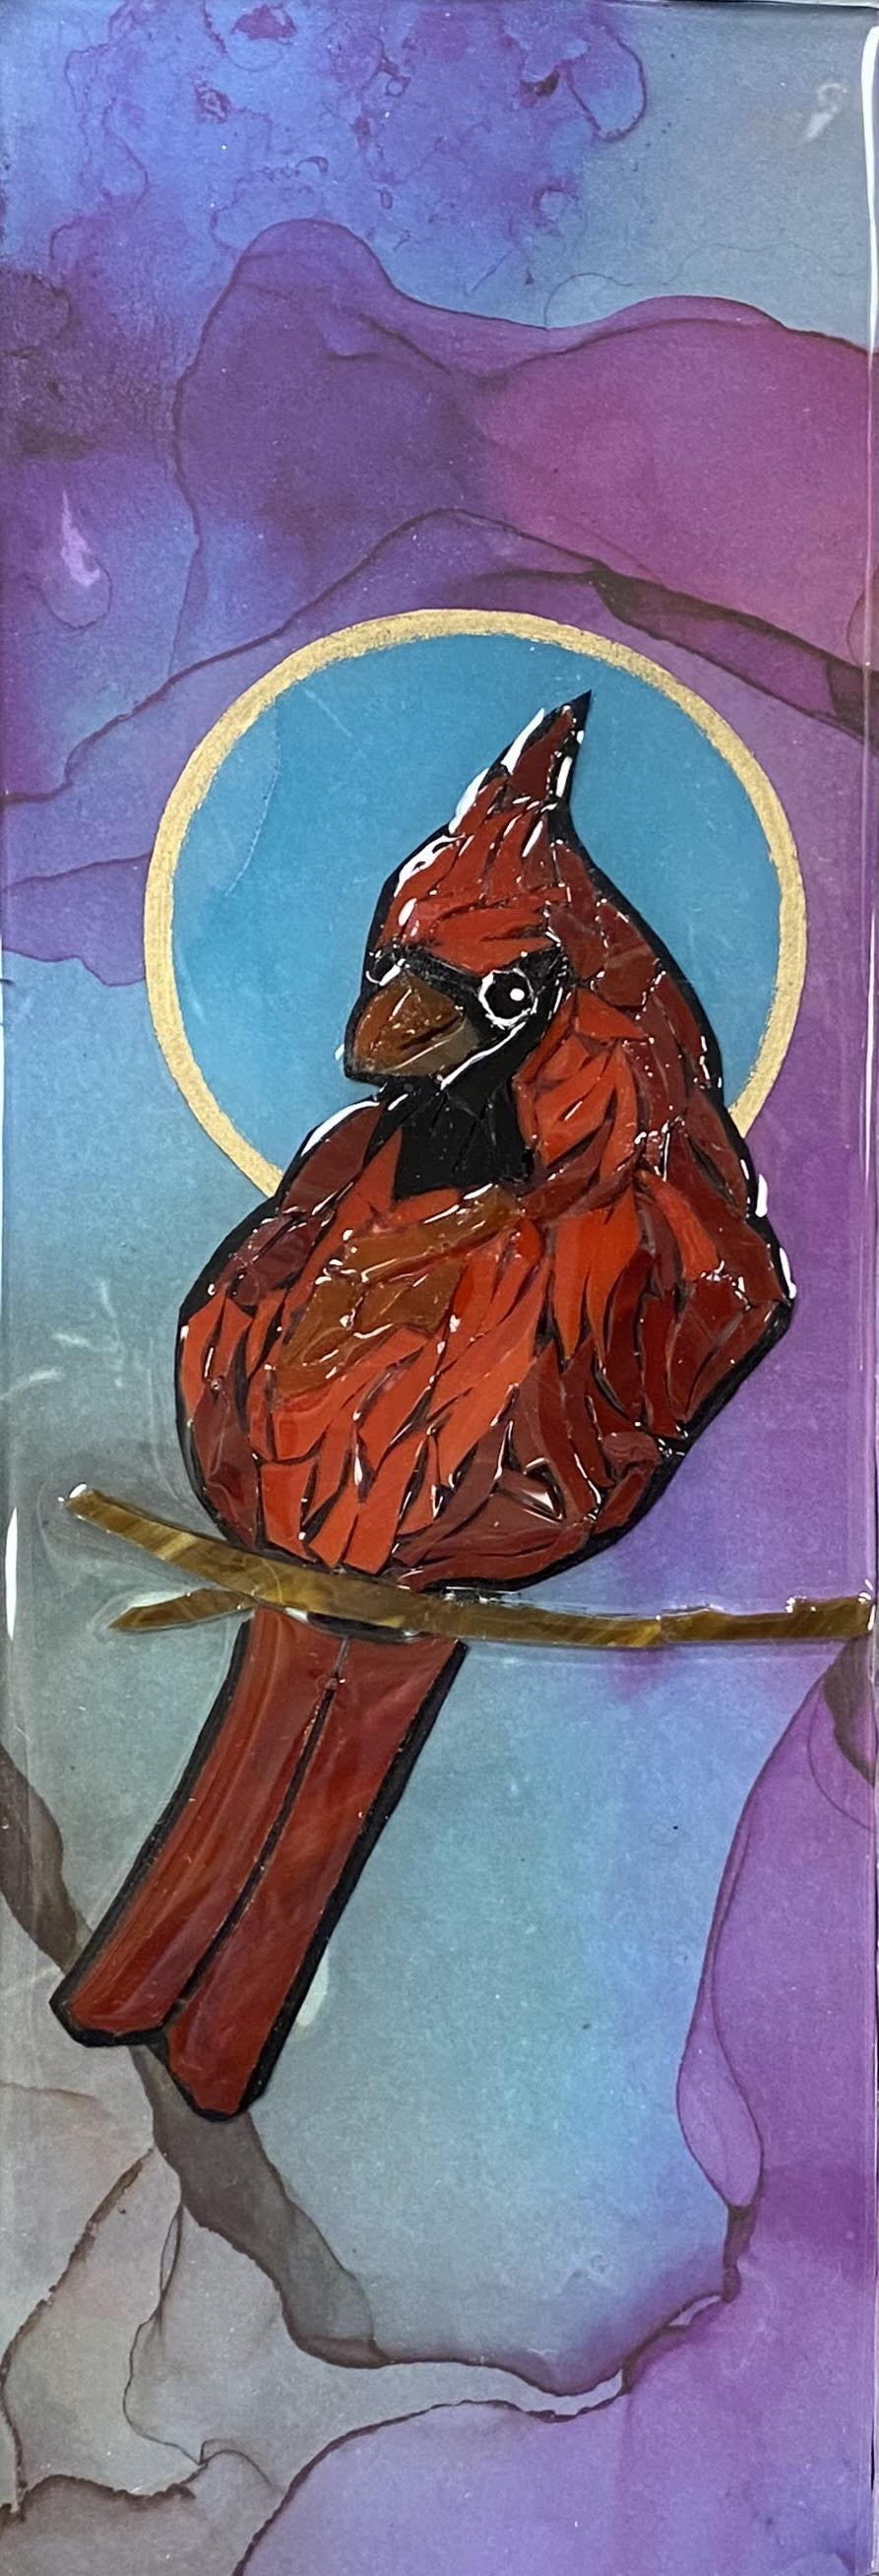 Amy Hahn's Cardinal